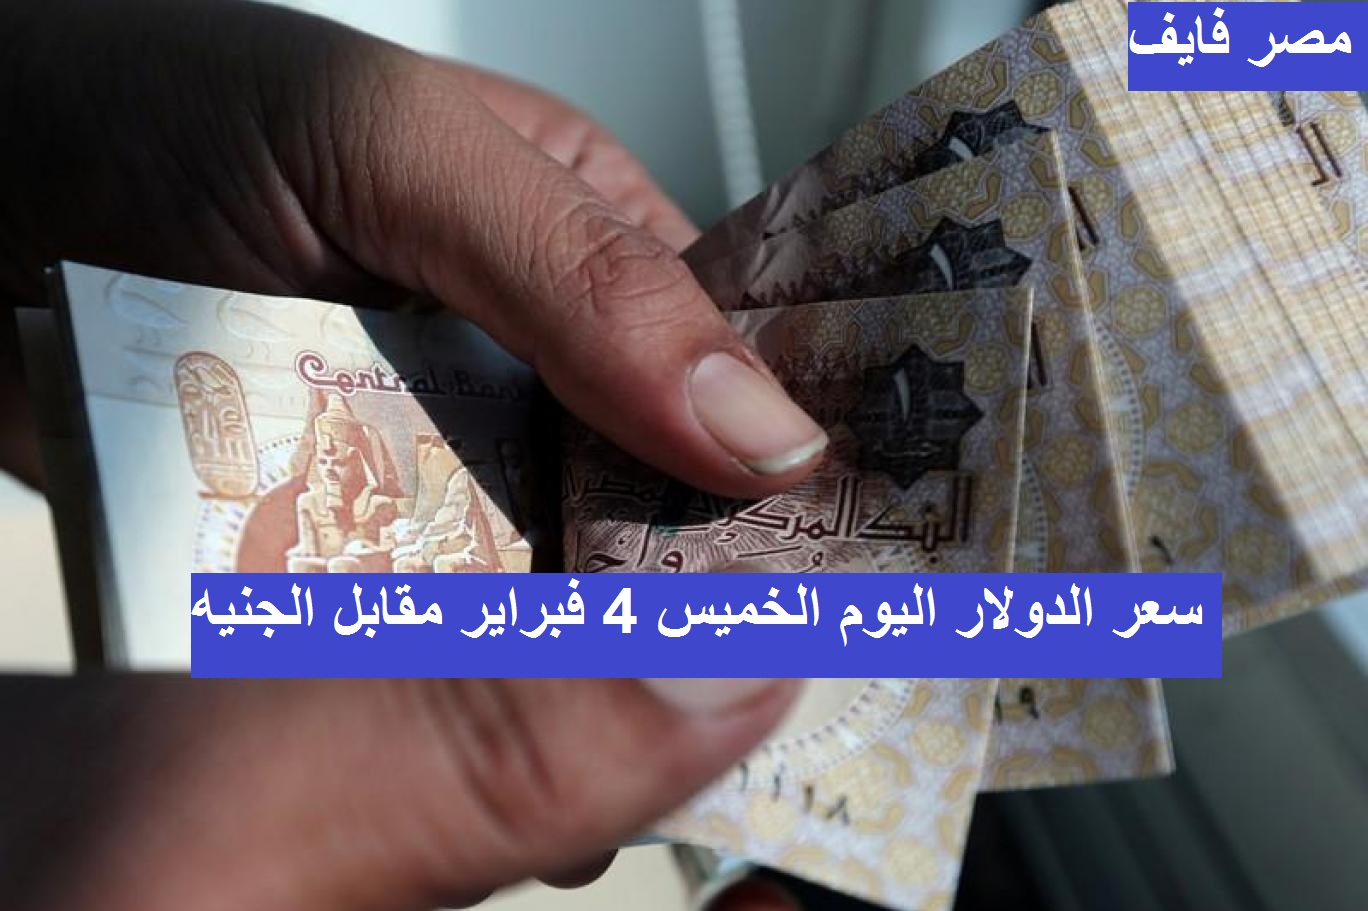 سعر الدولار اليوم في مصر 4 فبراير 2021 وتوقعات أسعار العملة الخضراء الأيام المقبلة